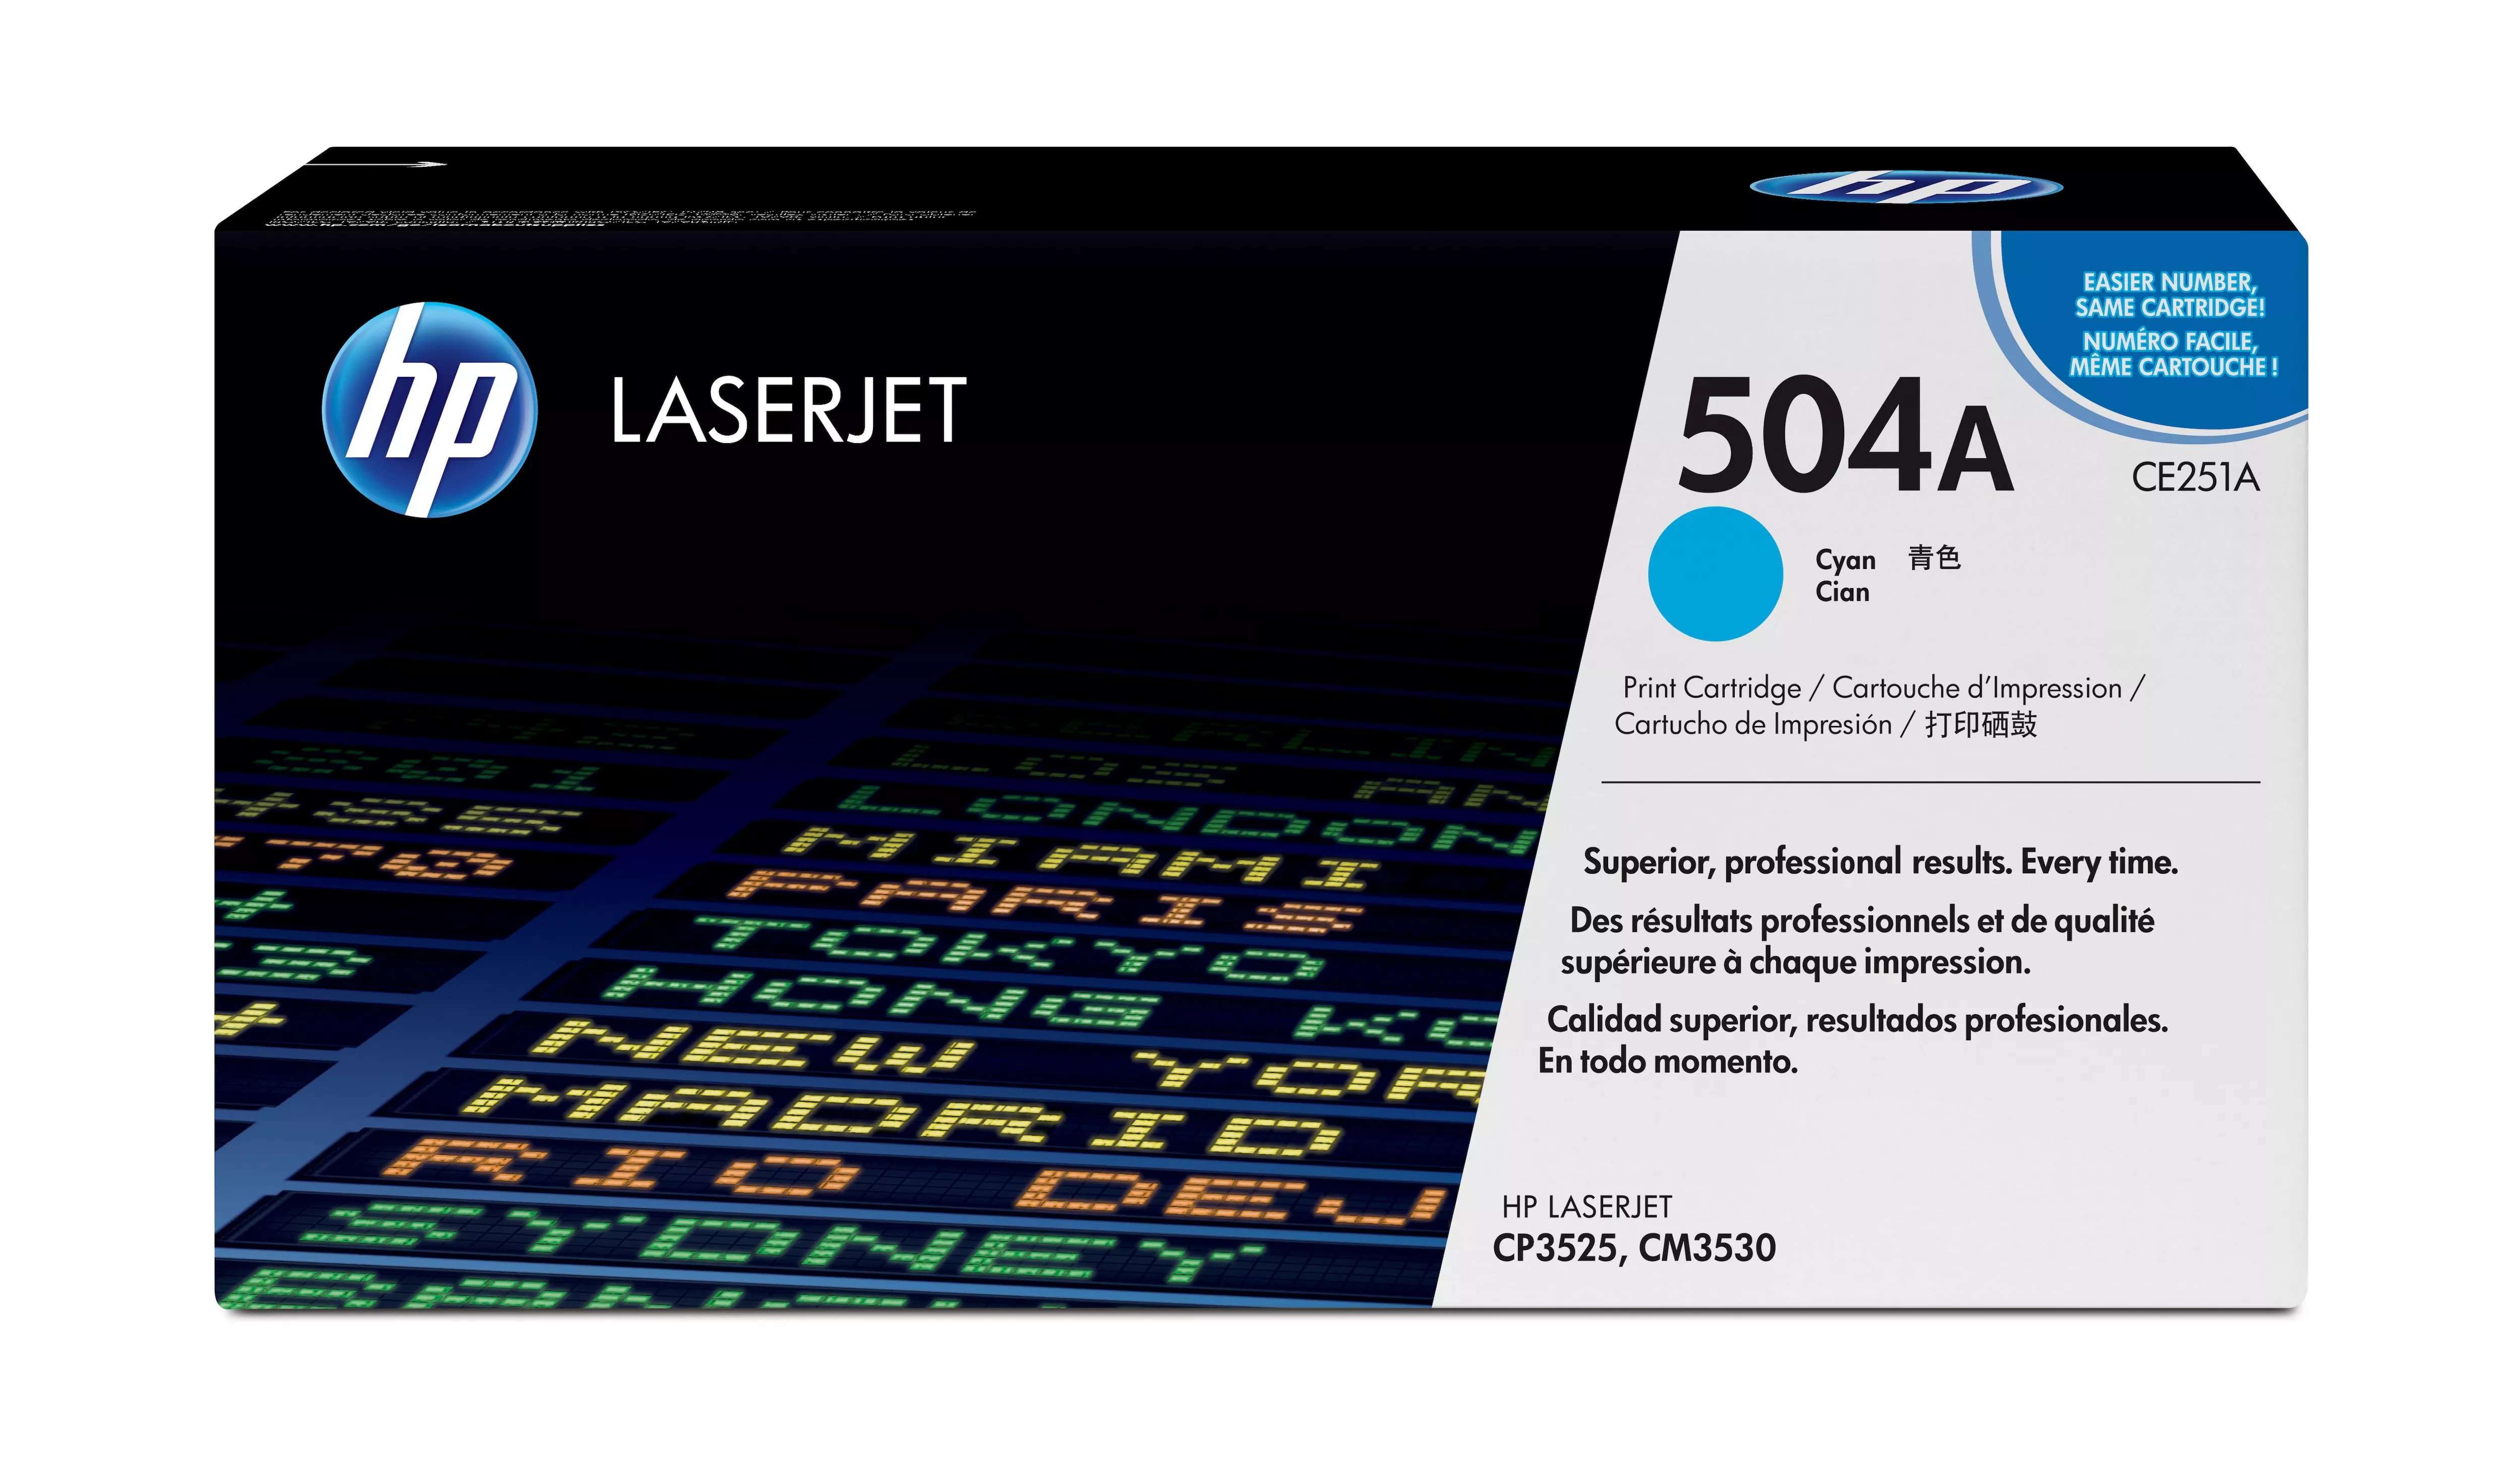 Achat HP 504A original Colour LaserJet Toner cartridge CE251A au meilleur prix